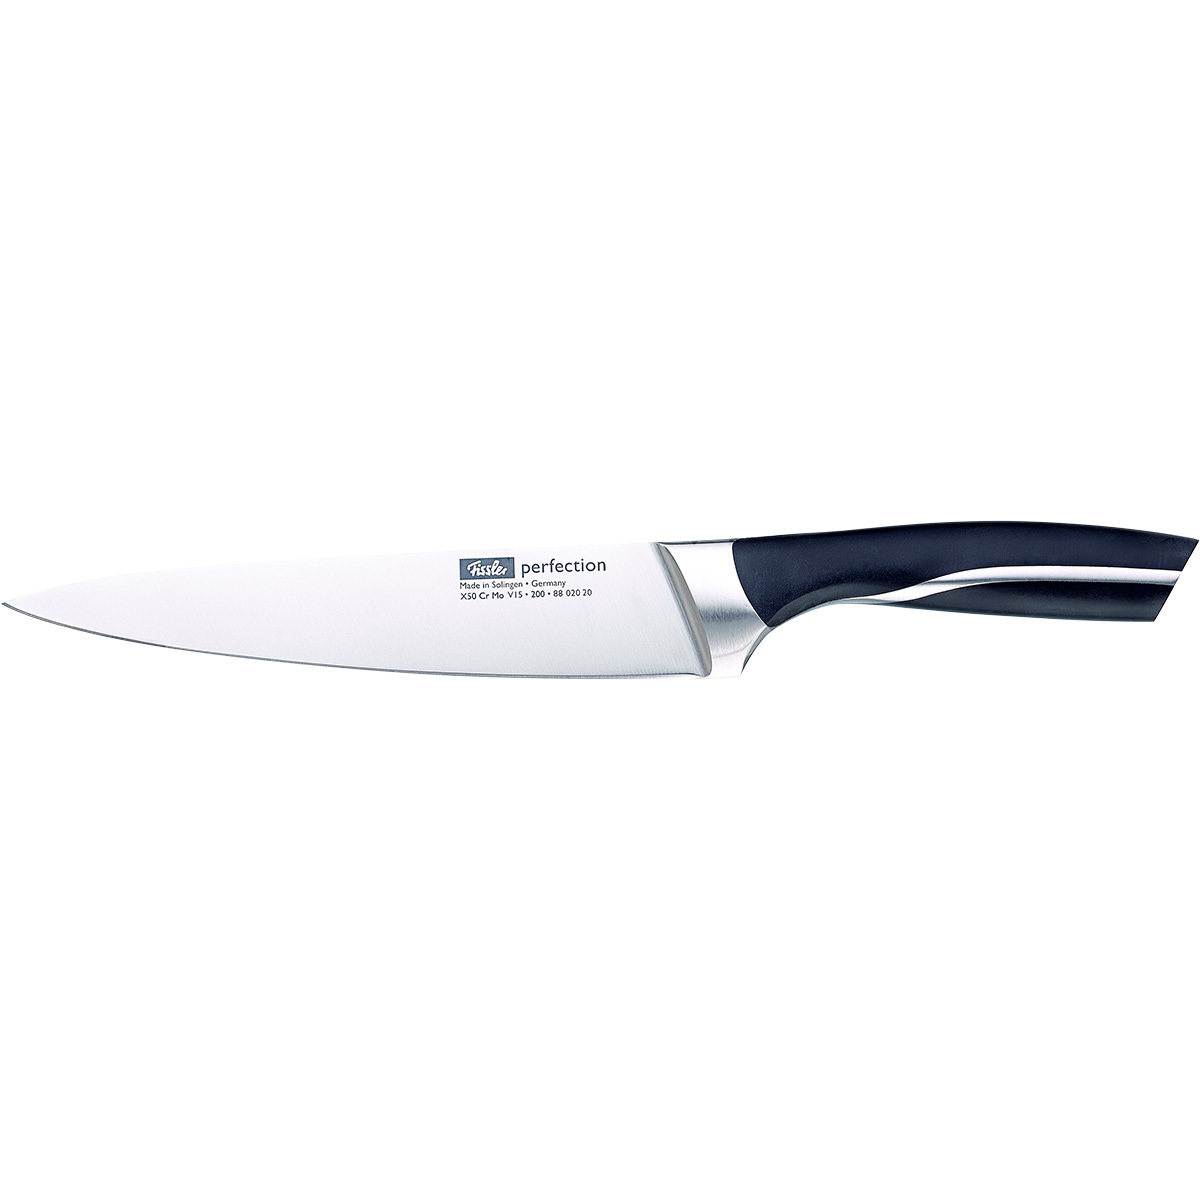 Нож универсальный Fissler Perfection 160 мм 8802016 - 1